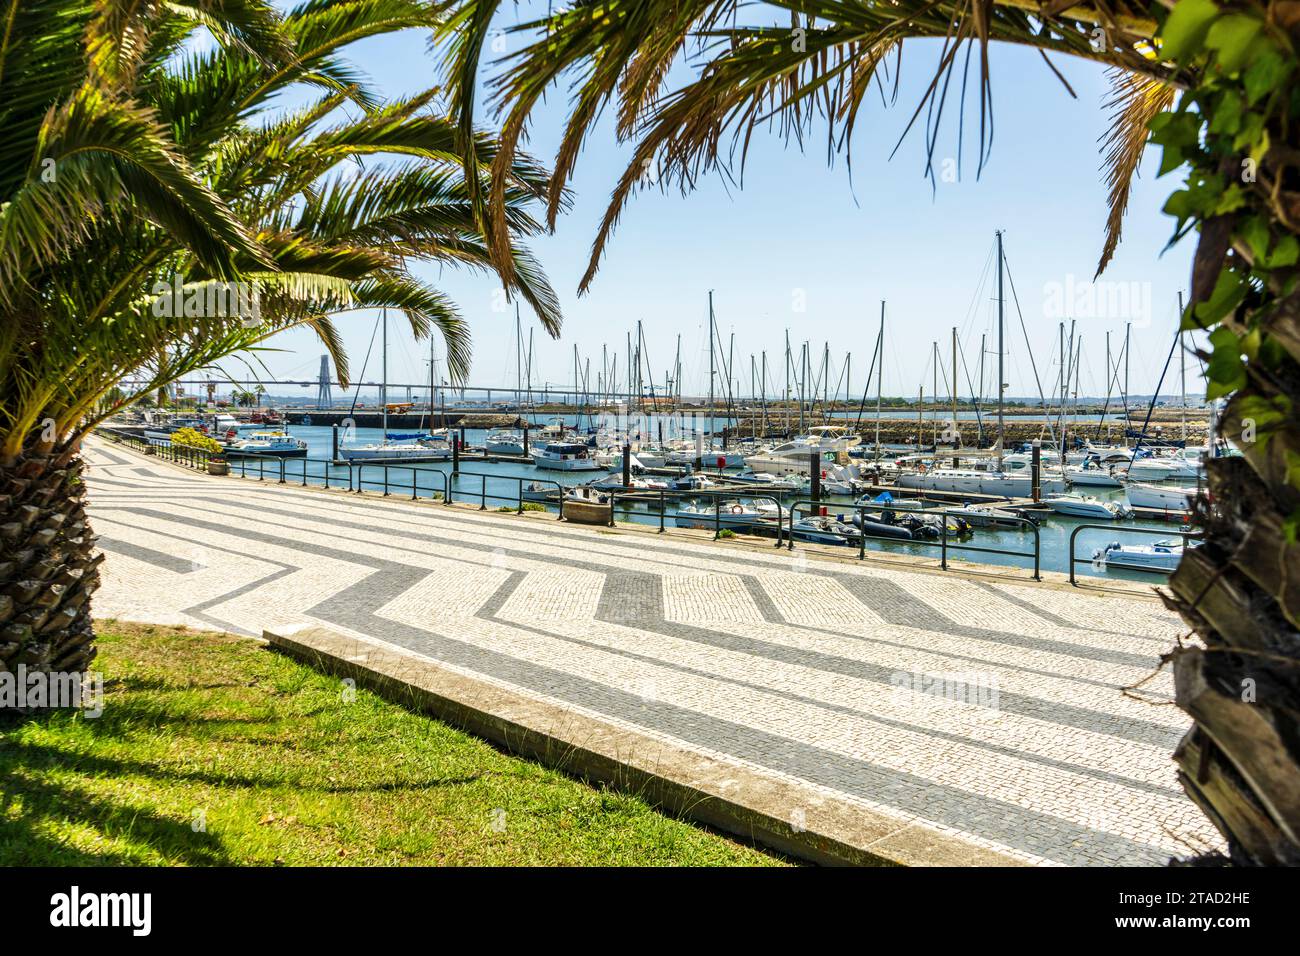 Splendida vista su un molo con barche e yacht, Figueira da foz, Portogallo. Foto Stock